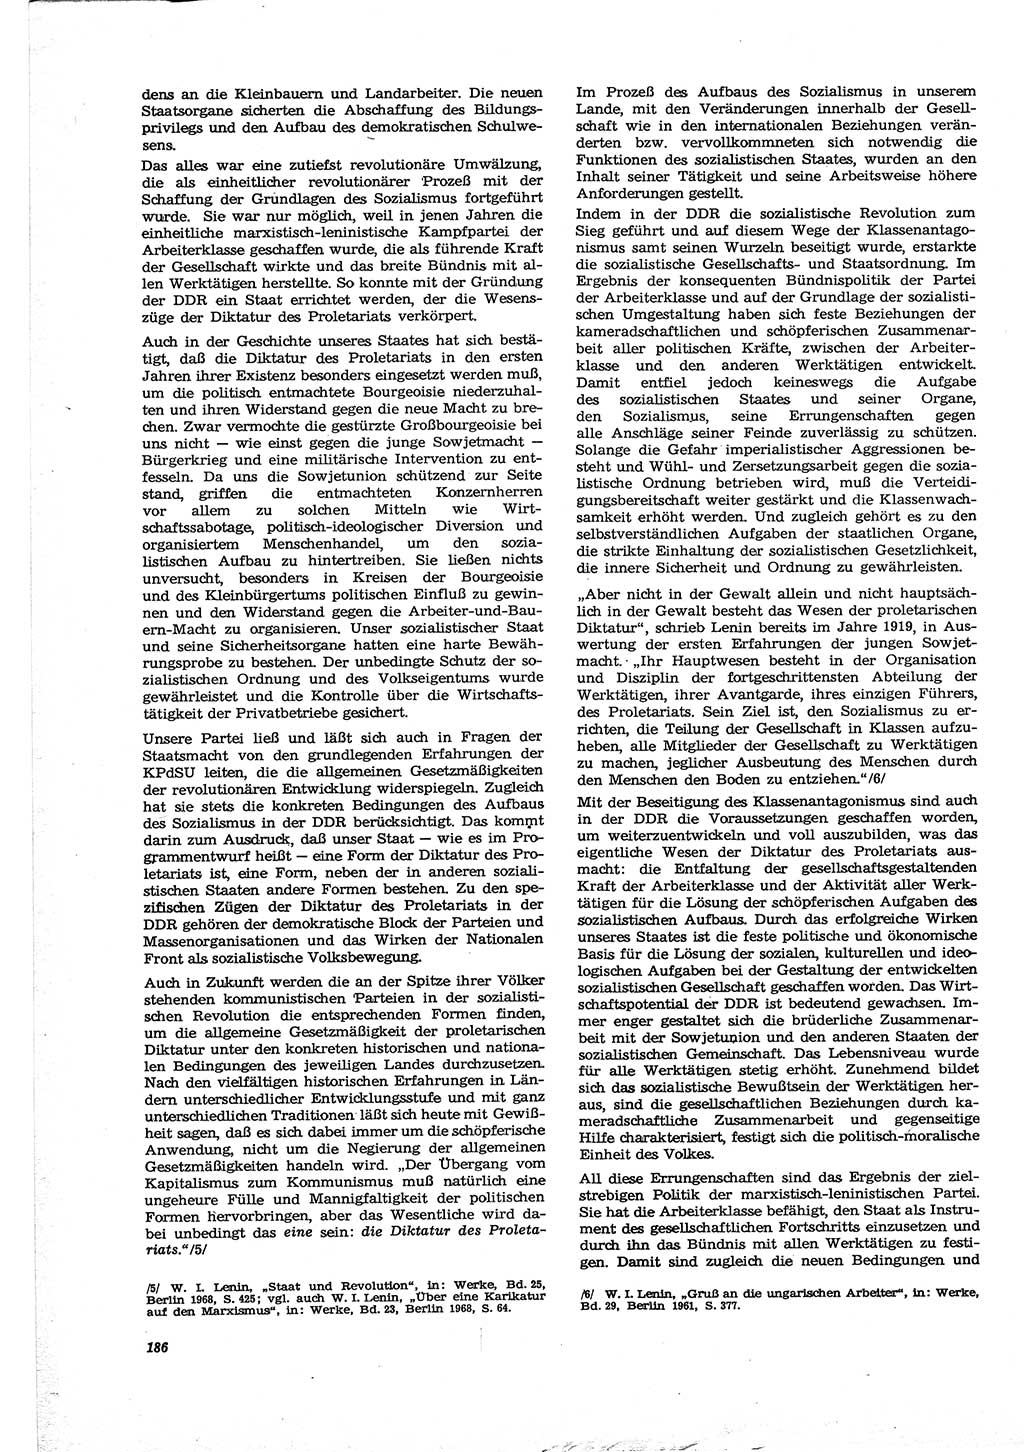 Neue Justiz (NJ), Zeitschrift für Recht und Rechtswissenschaft [Deutsche Demokratische Republik (DDR)], 30. Jahrgang 1976, Seite 186 (NJ DDR 1976, S. 186)